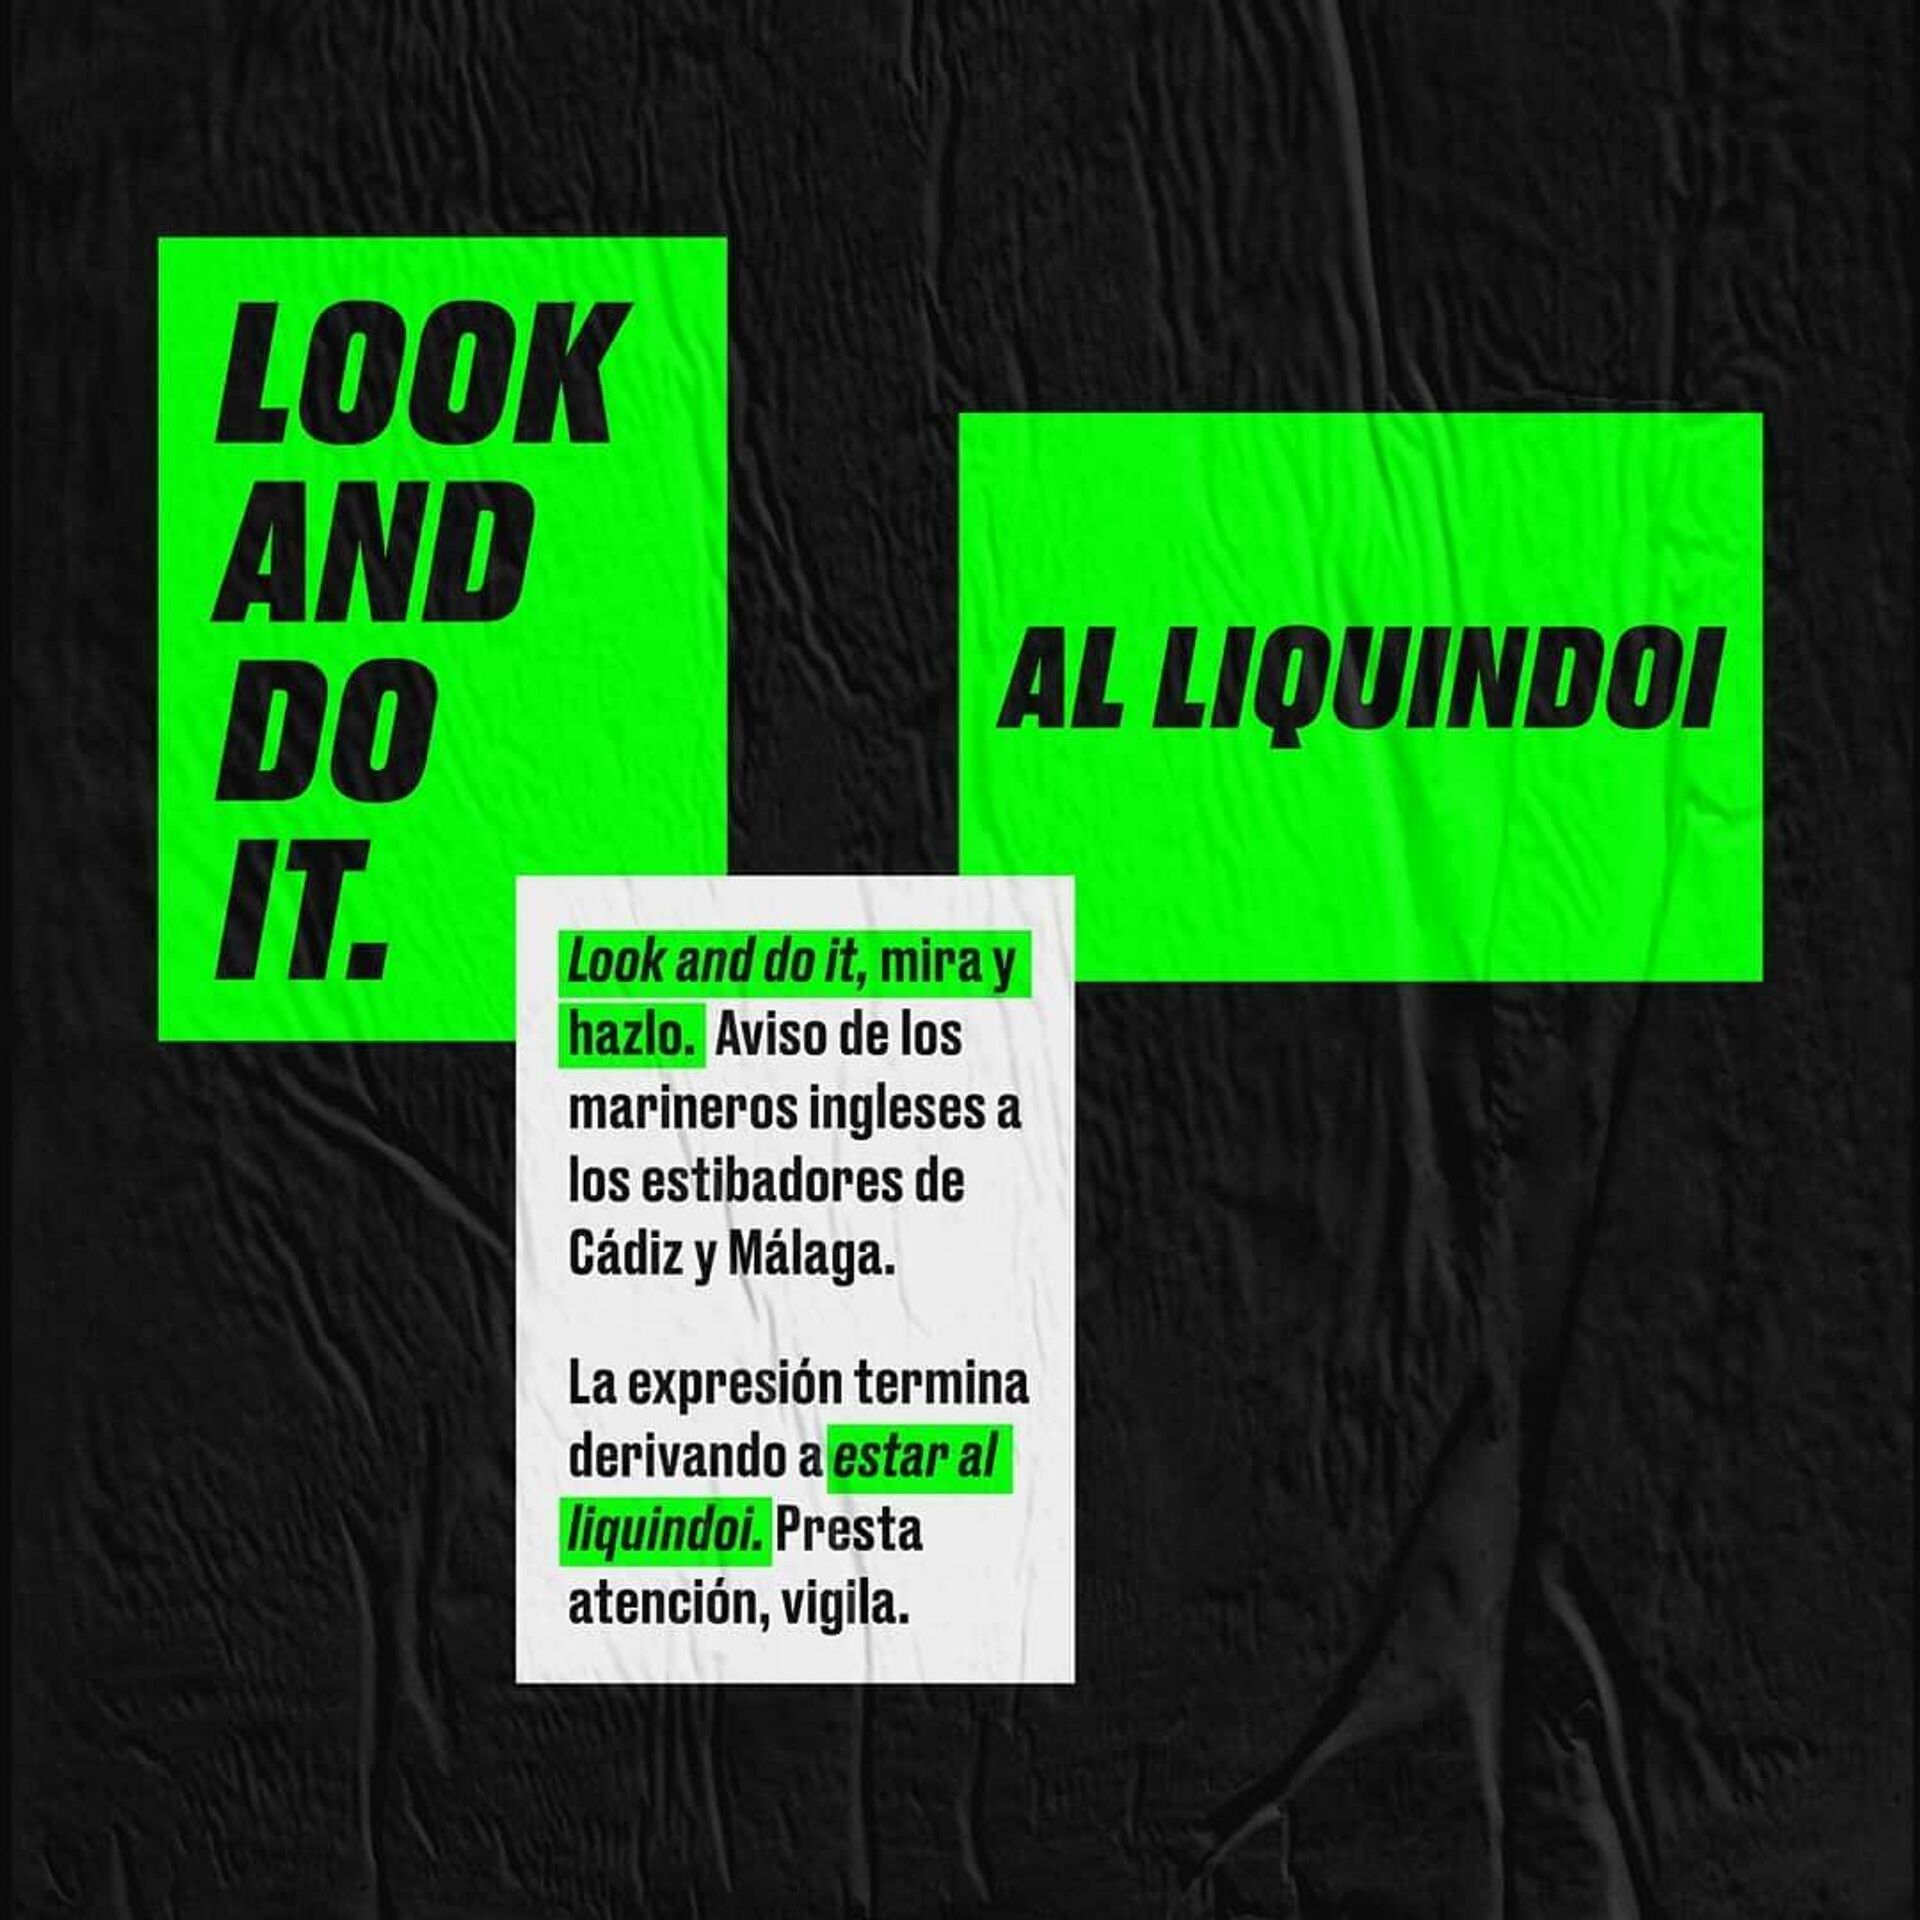 Look and do it, al liquindoi - Sputnik Mundo, 1920, 28.10.2021